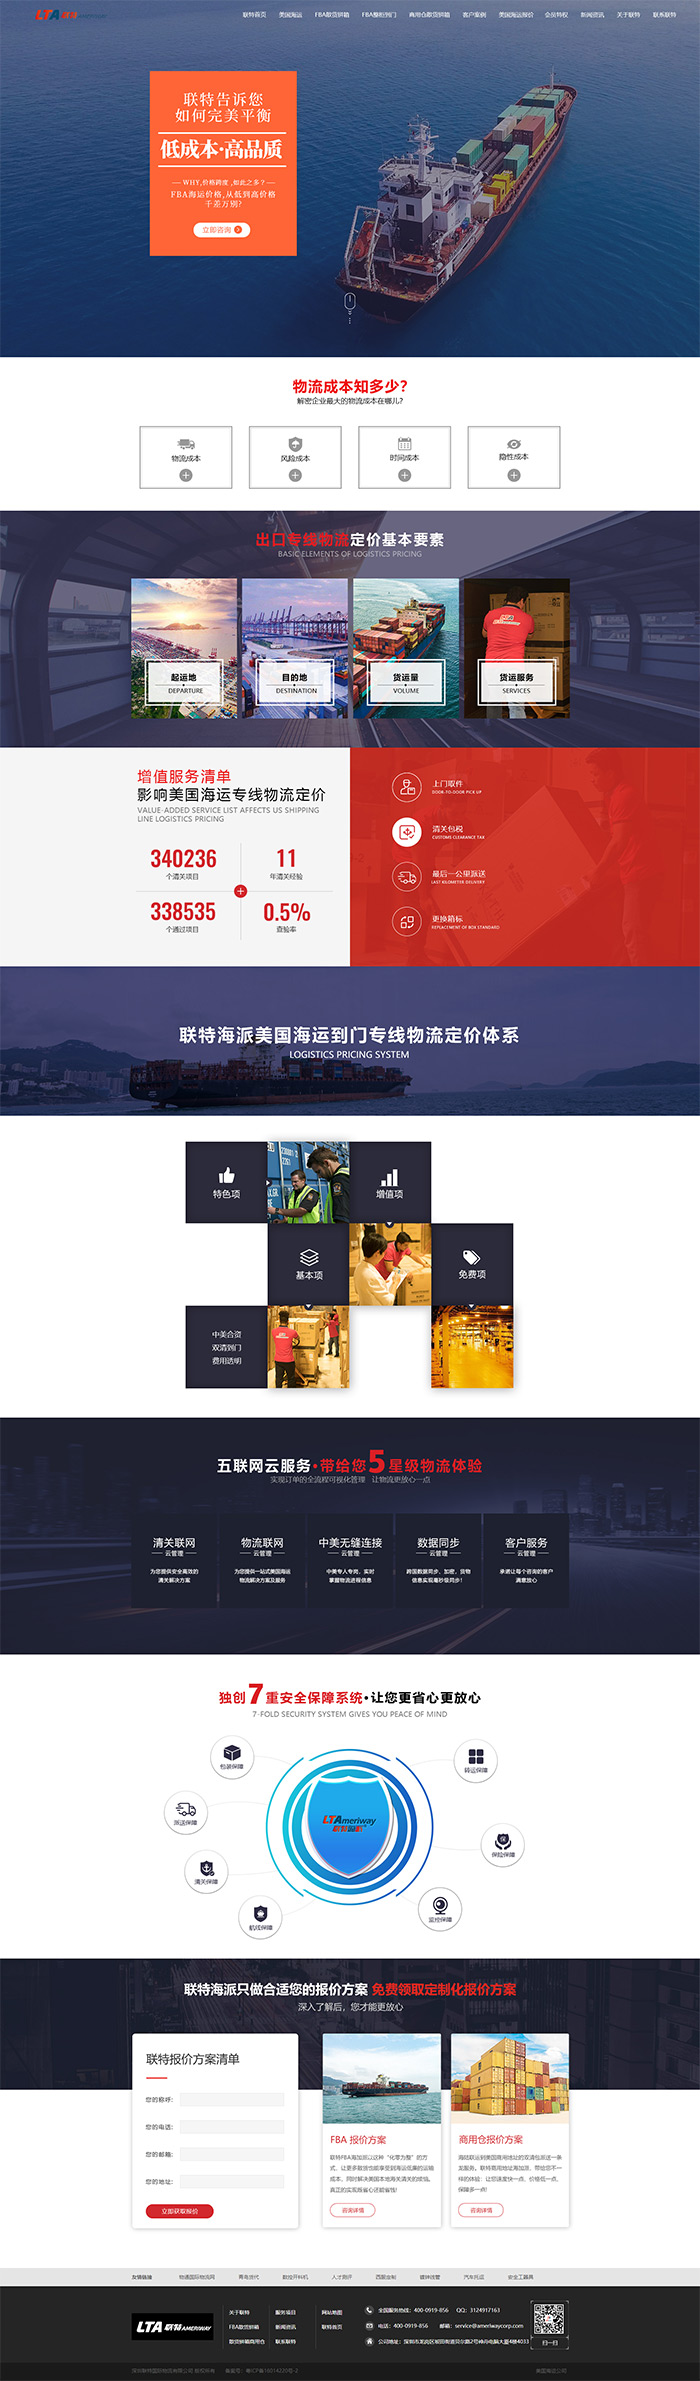 深圳联特国际物流有限公司品牌型网站策划